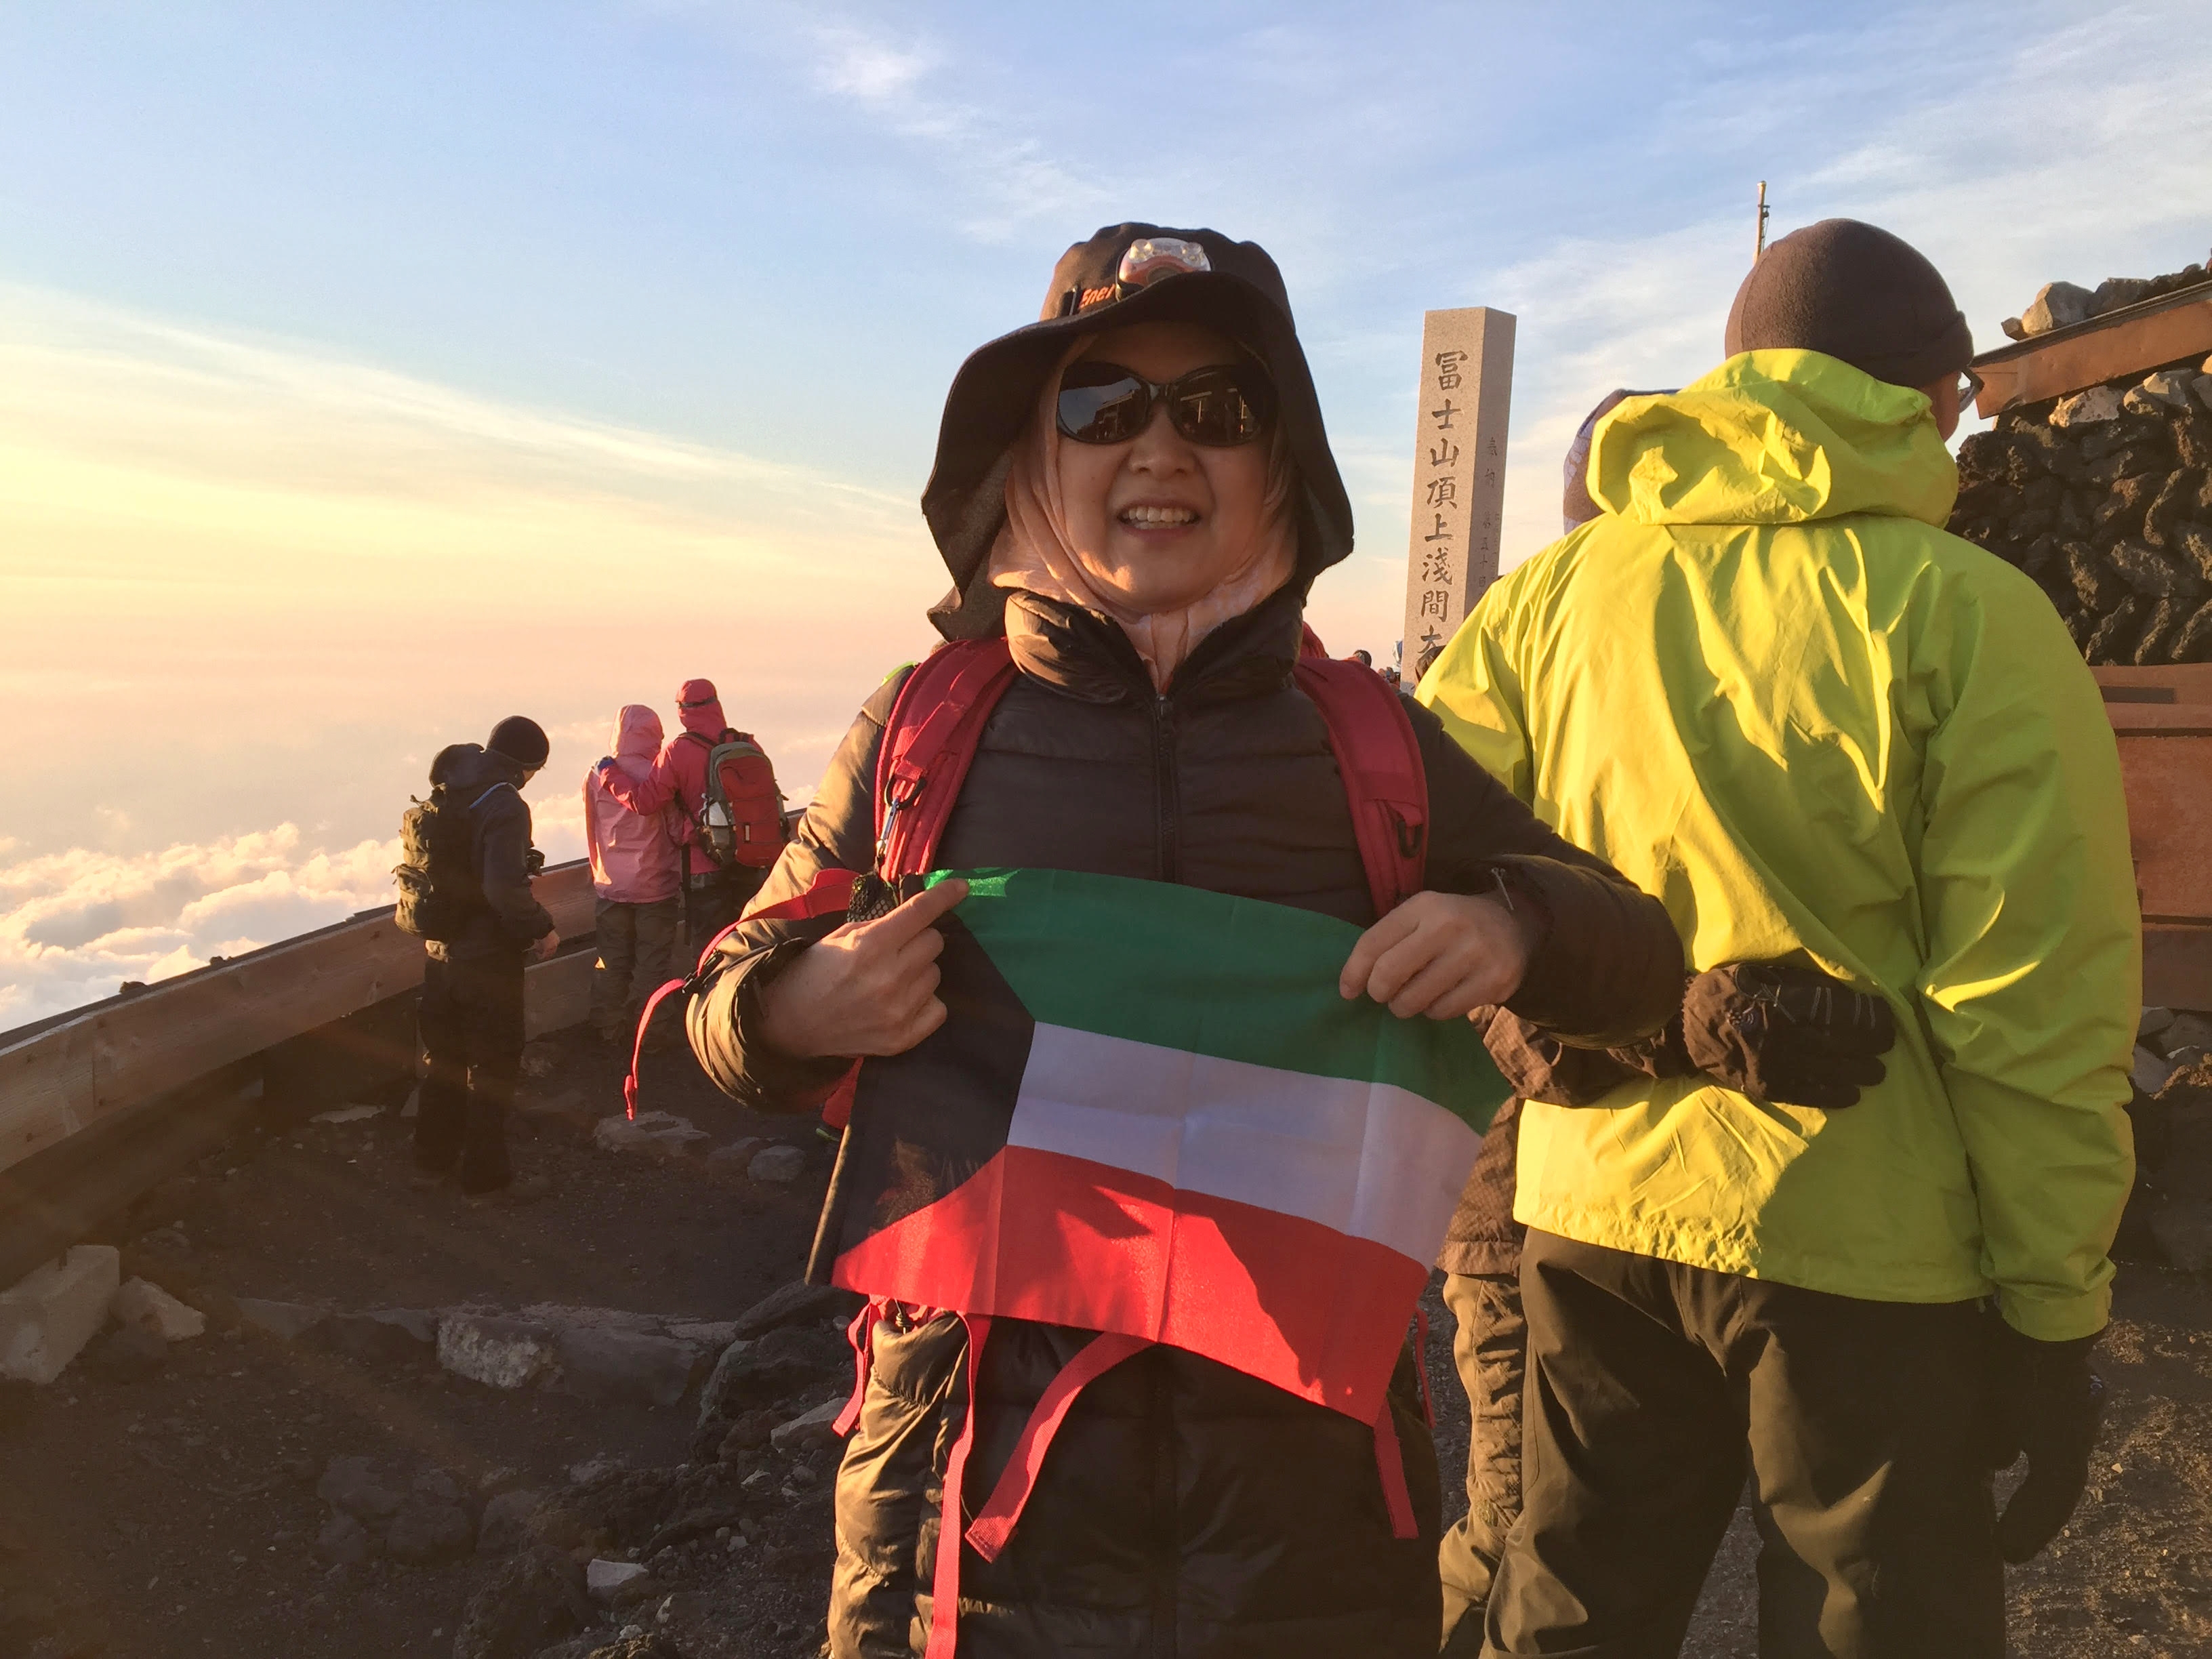 Eiko Ishiyama raised Kuwaiti flag at Mt. Fuji peak in Japan